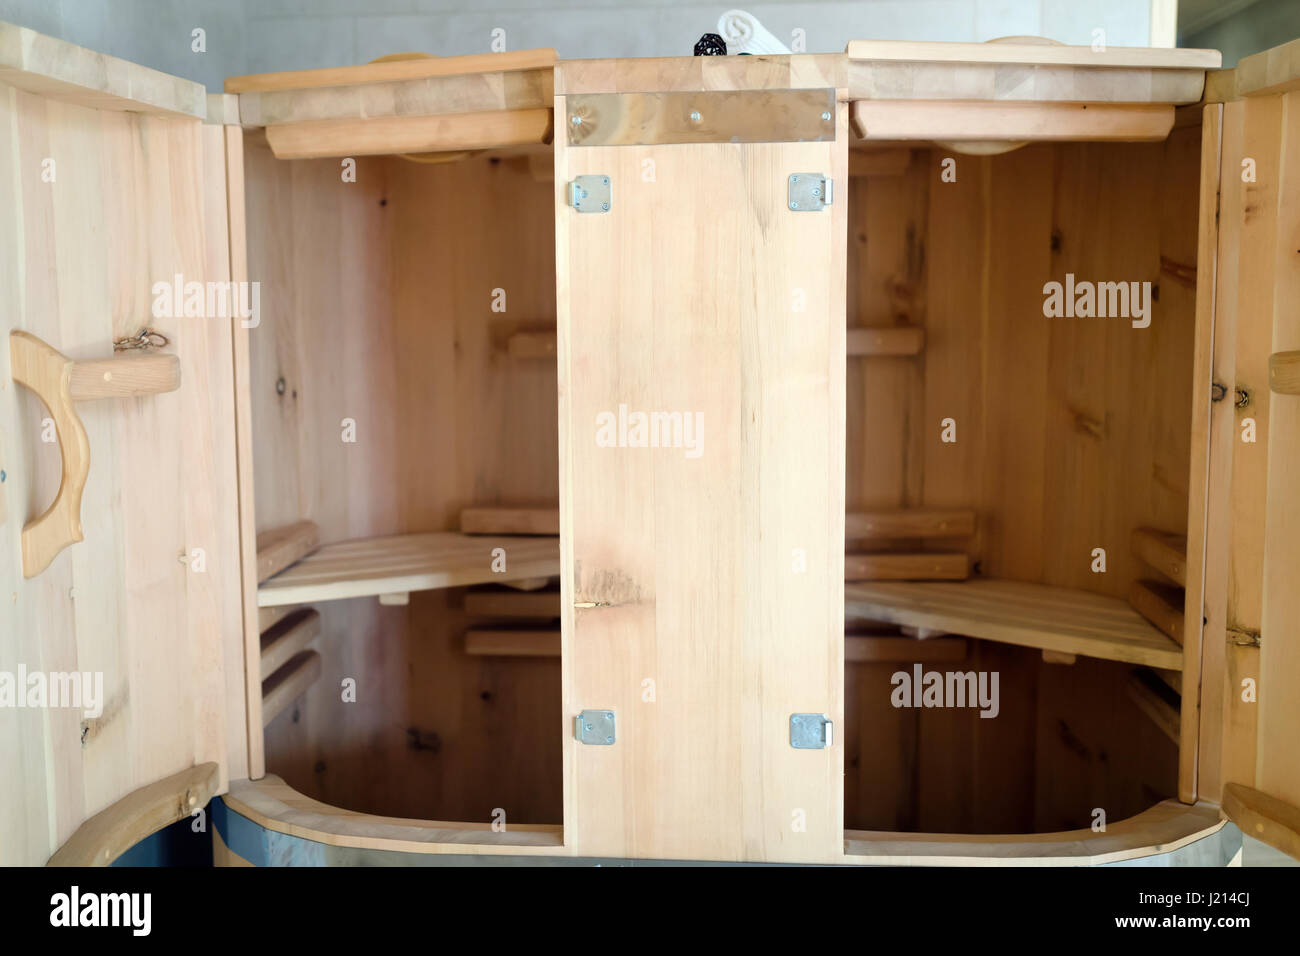 Canna di cedro sauna nuova forma di trattamento terapeutico Foto Stock